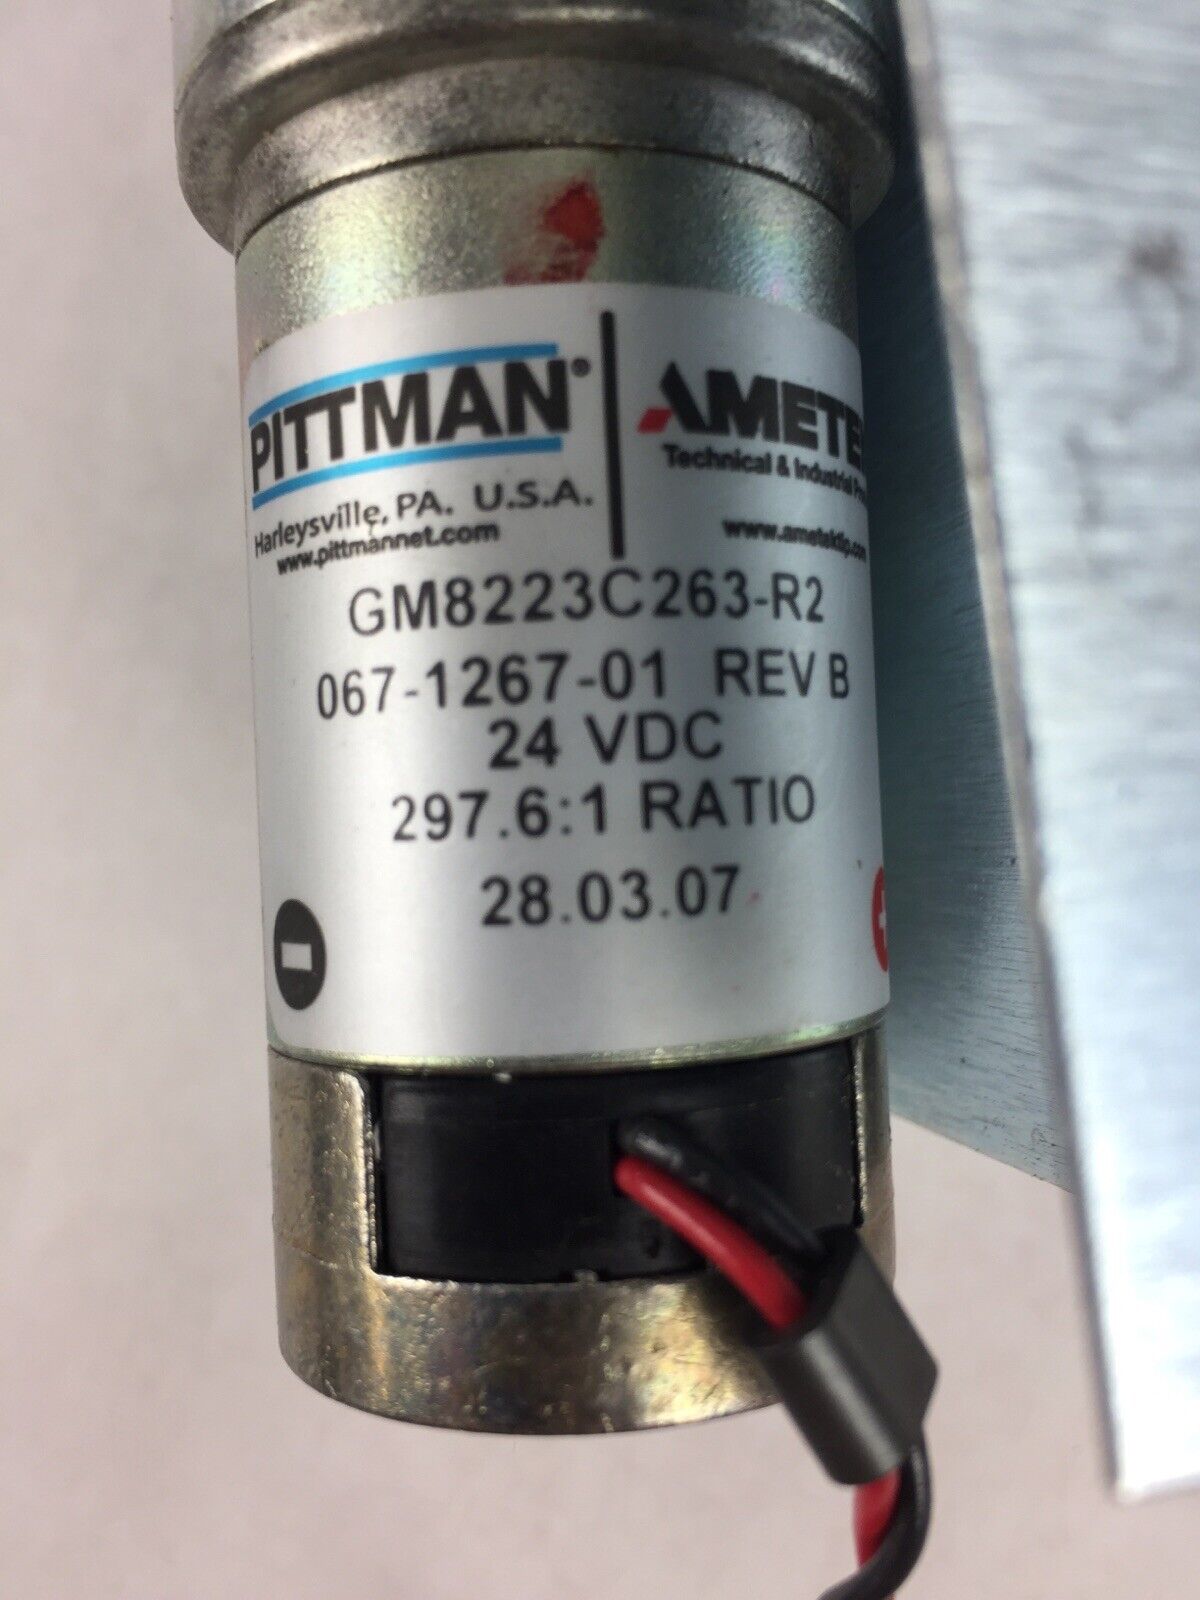 Pittman Lo-Cog GM8223C263-R2 Rev B 24VDC Motor 6:1 Ratio